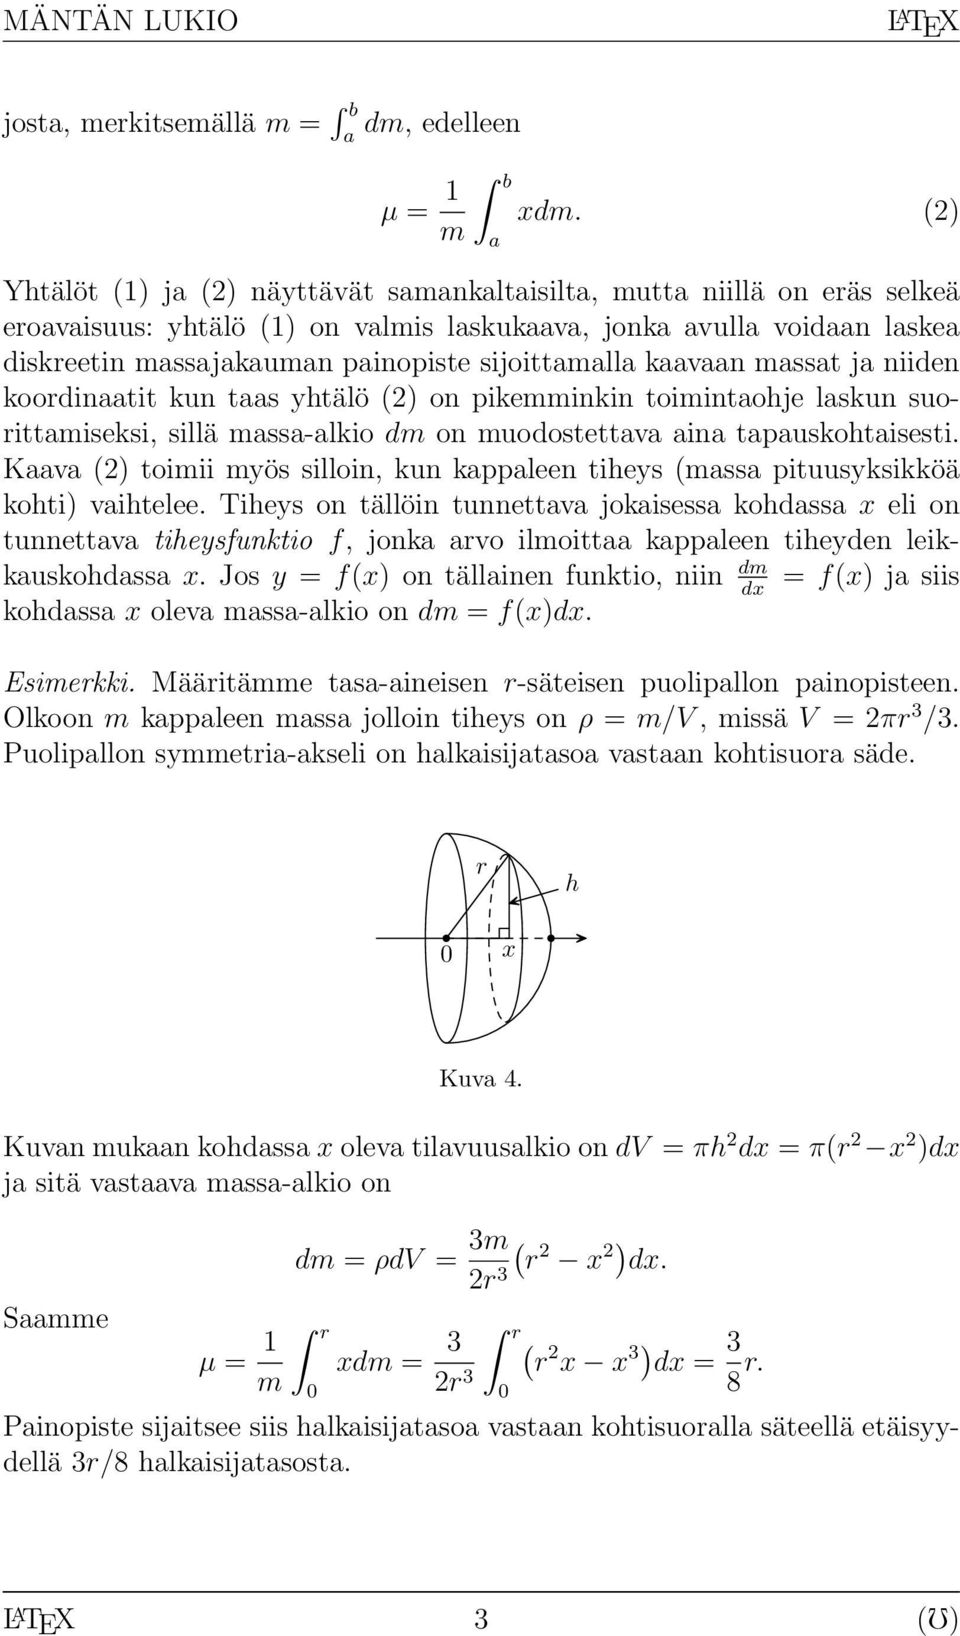 koordintit kun ts yhtälö (2) on pikemminkin toimintohje lskun suorittmiseksi, sillä mss-lkio dm on muodostettv in tpuskohtisesti.